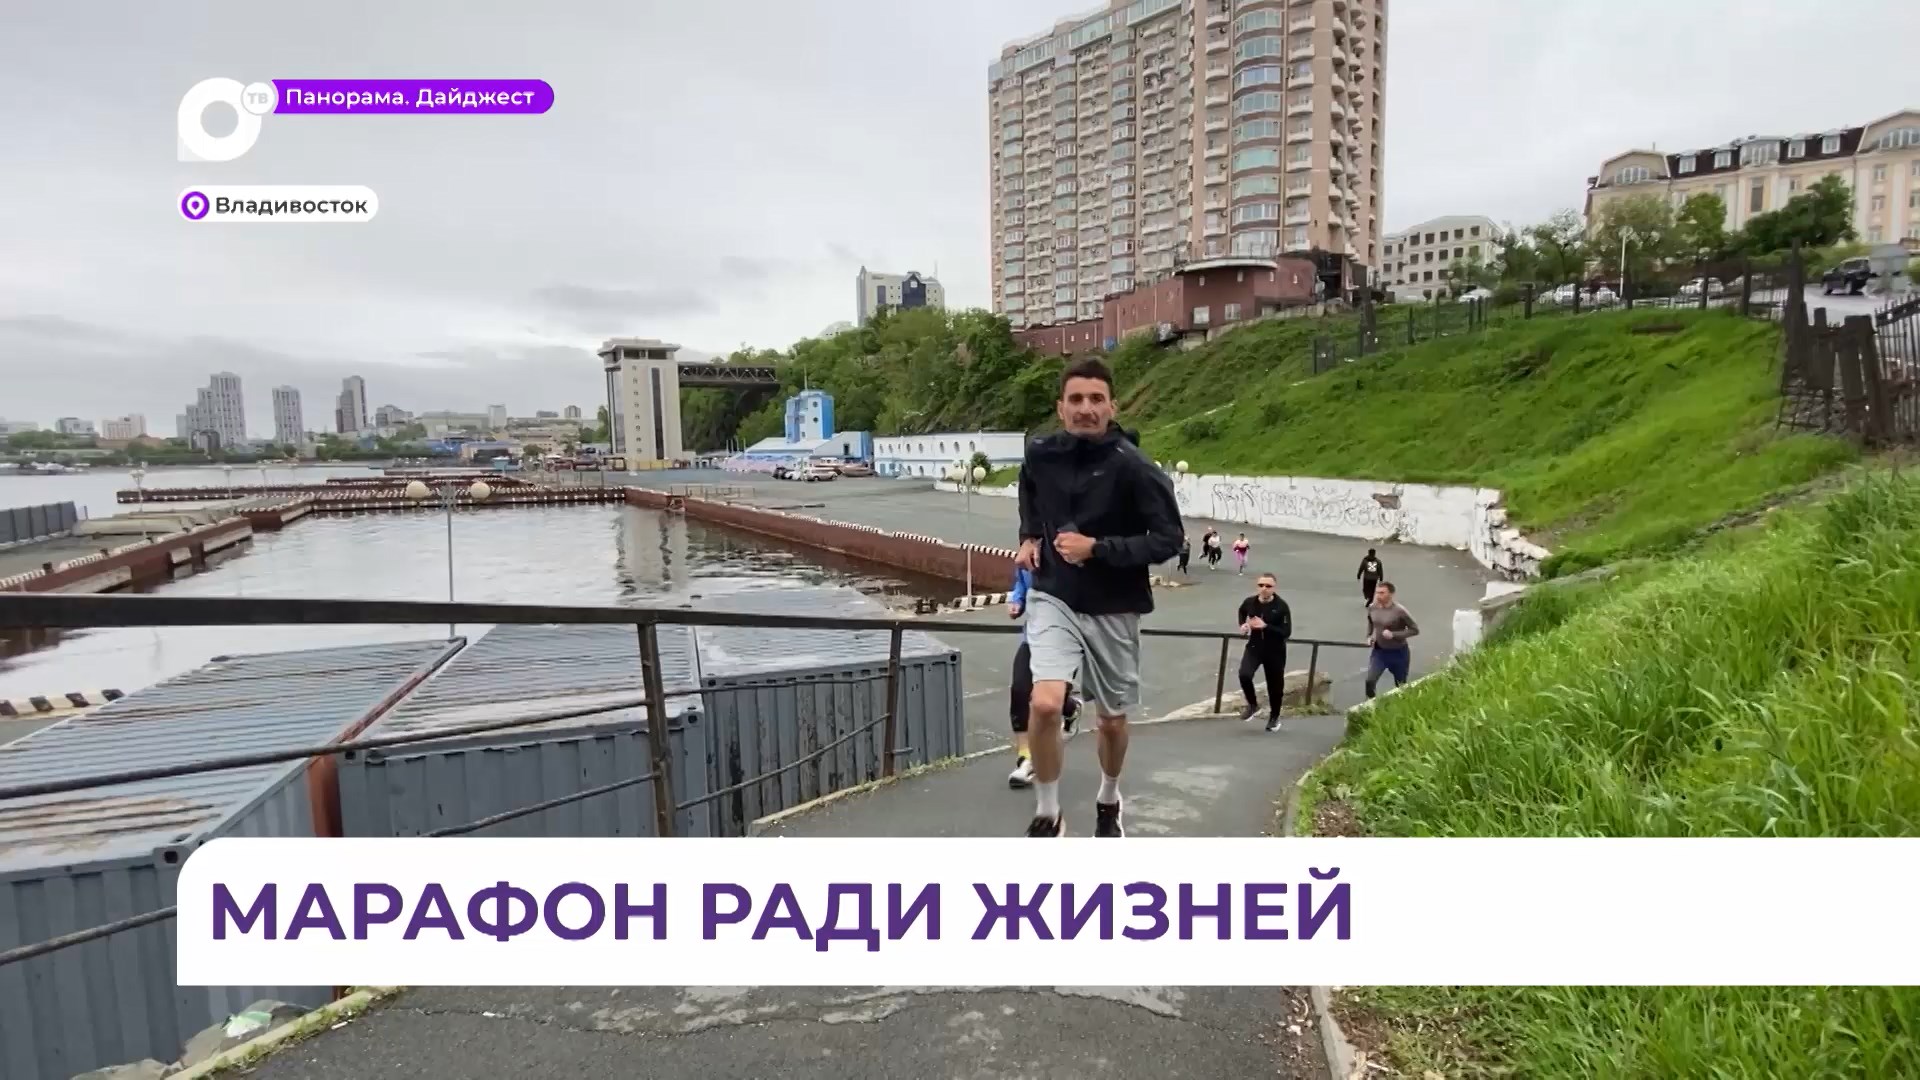 Спортсмен-экстремал из Твери покоряет сопки Владивостока